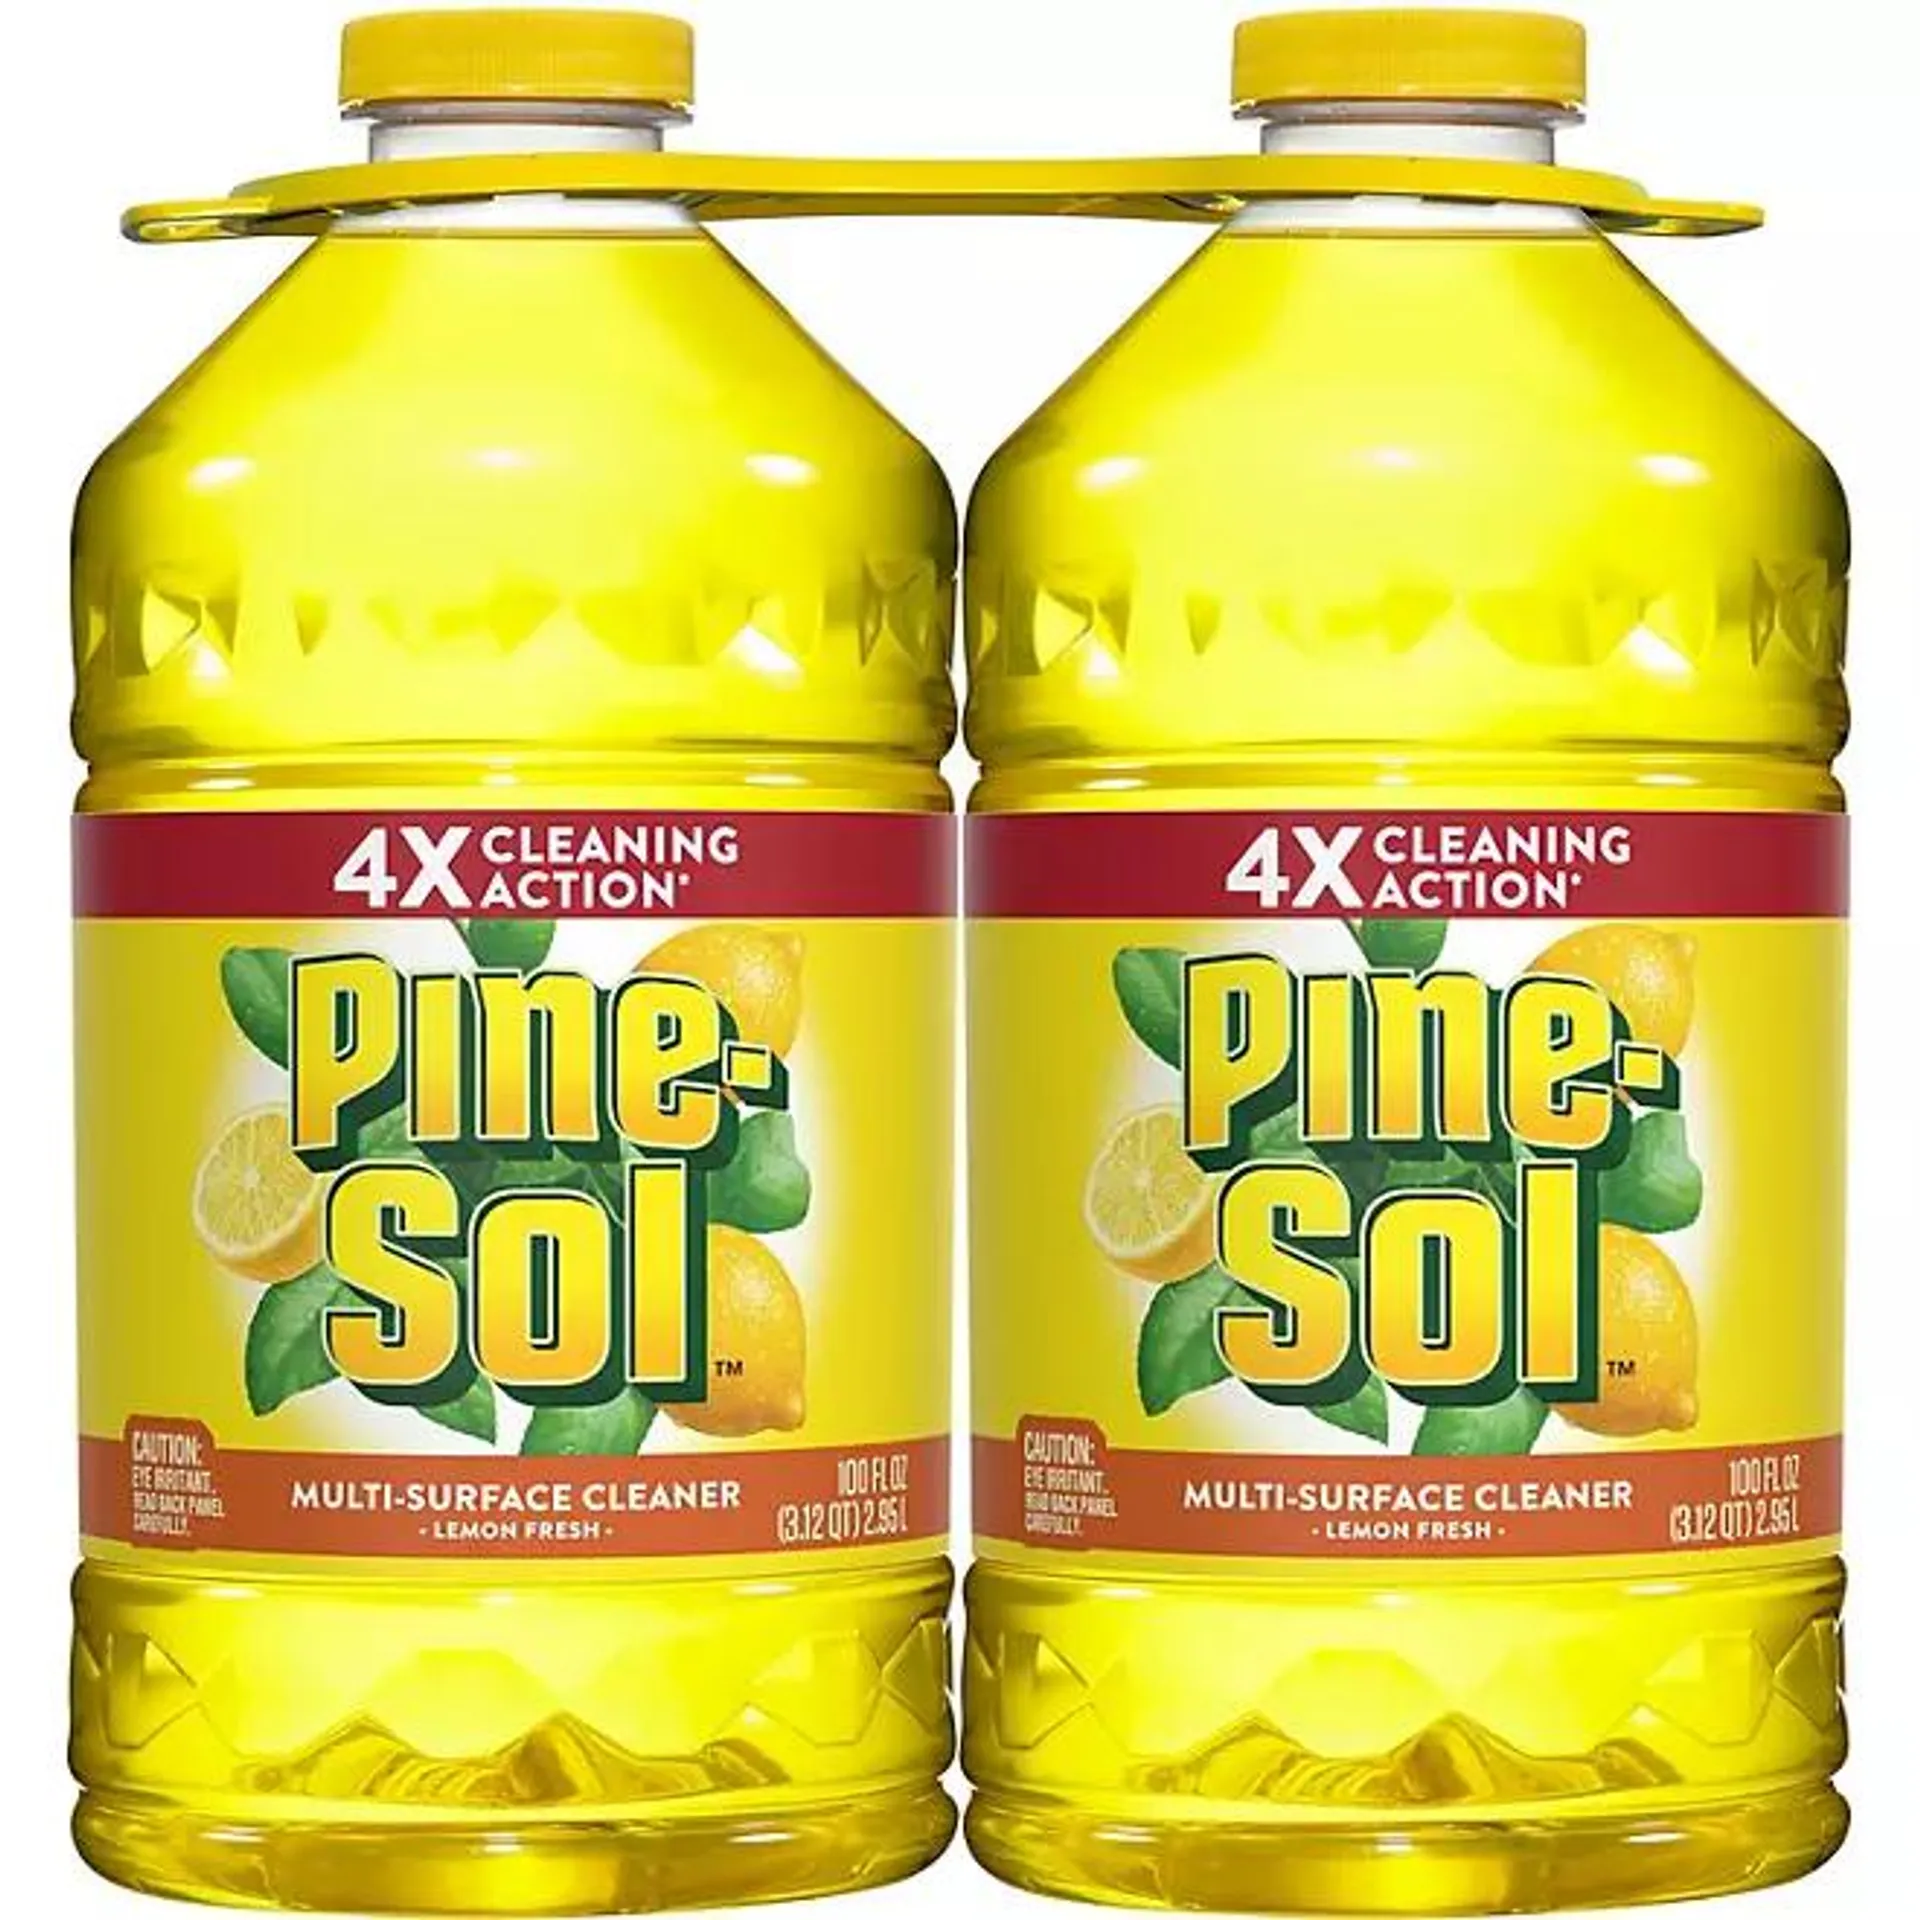 Pine-Sol All Purpose Multi-Surface Cleaner, Lemon Fresh 100 fl. oz./bottle, 2 pk.